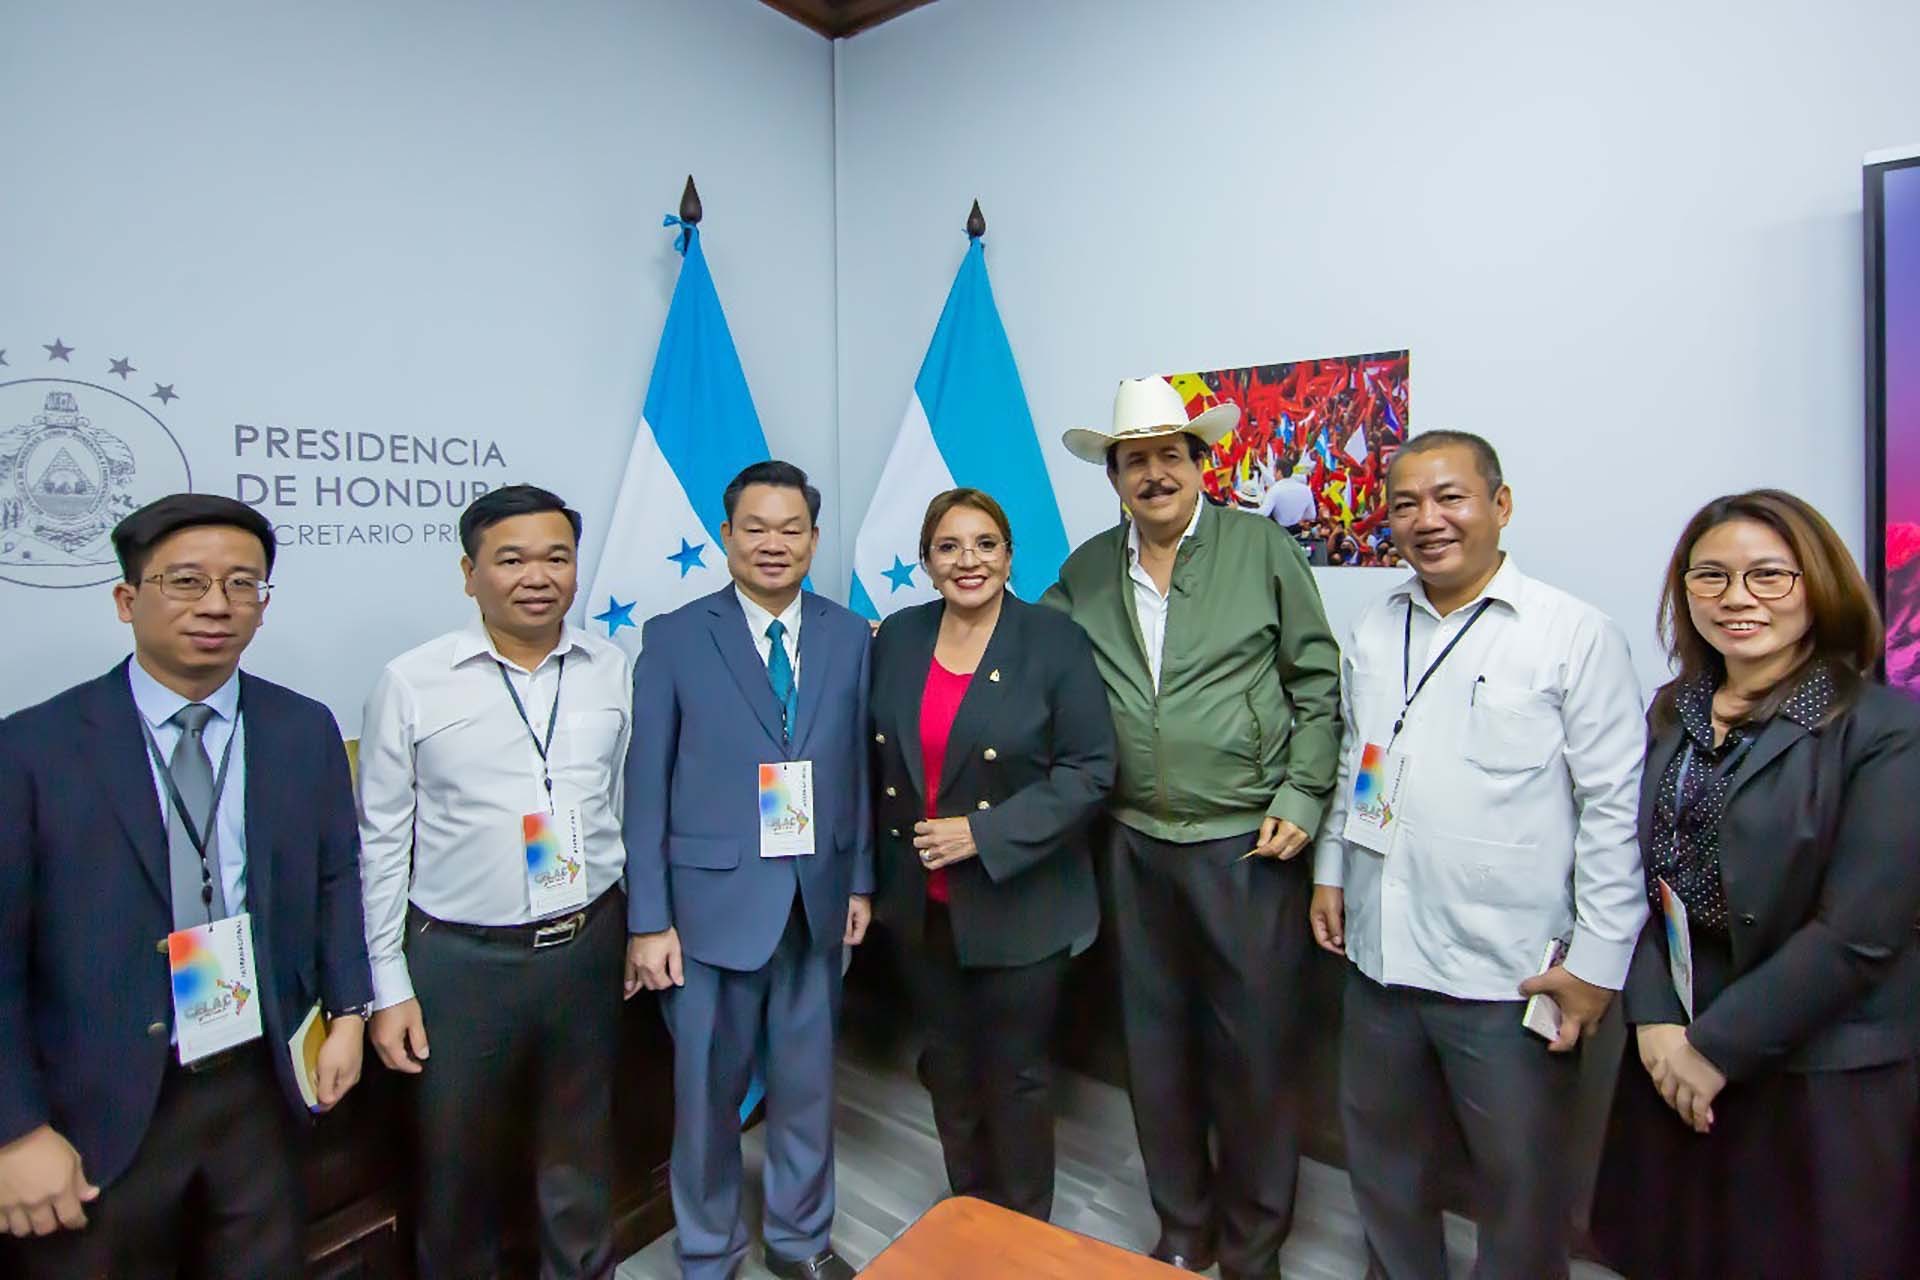 Đoàn đại biểu Đảng Cộng sản Việt Nam dự cuộc gặp lần thứ 27 Diễn đàn Sao Paulo, thăm và làm việc tại Honduras và Costa Rica